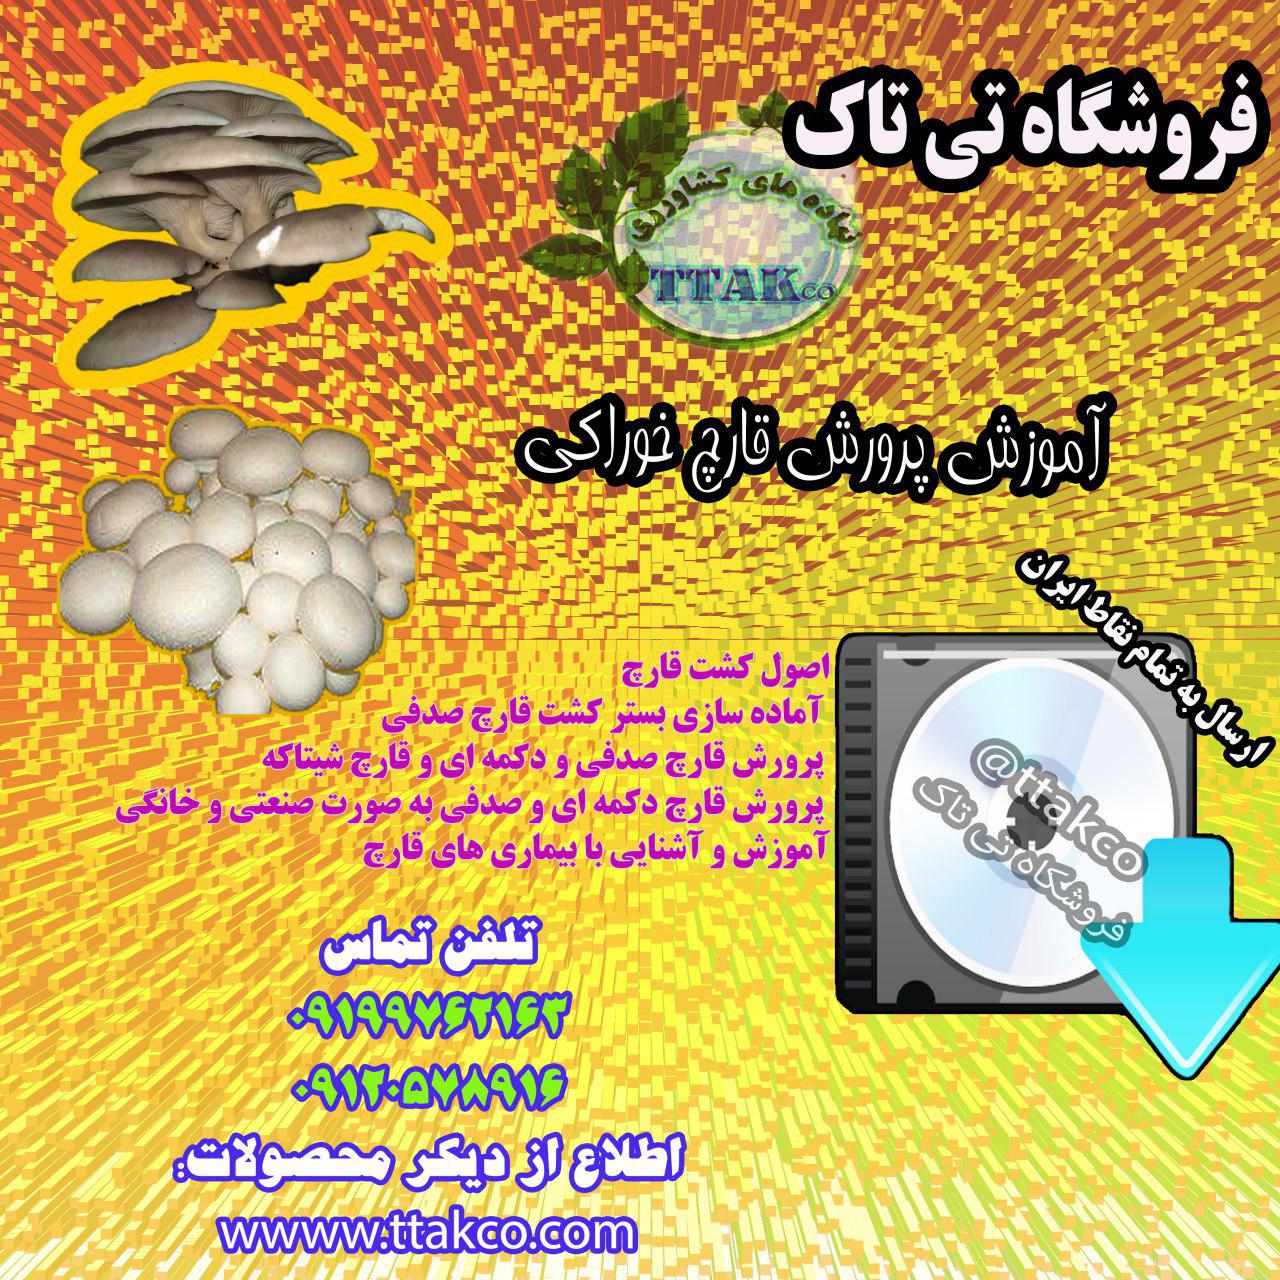 تولید و فروش بذر قارچ خورای 09199762163